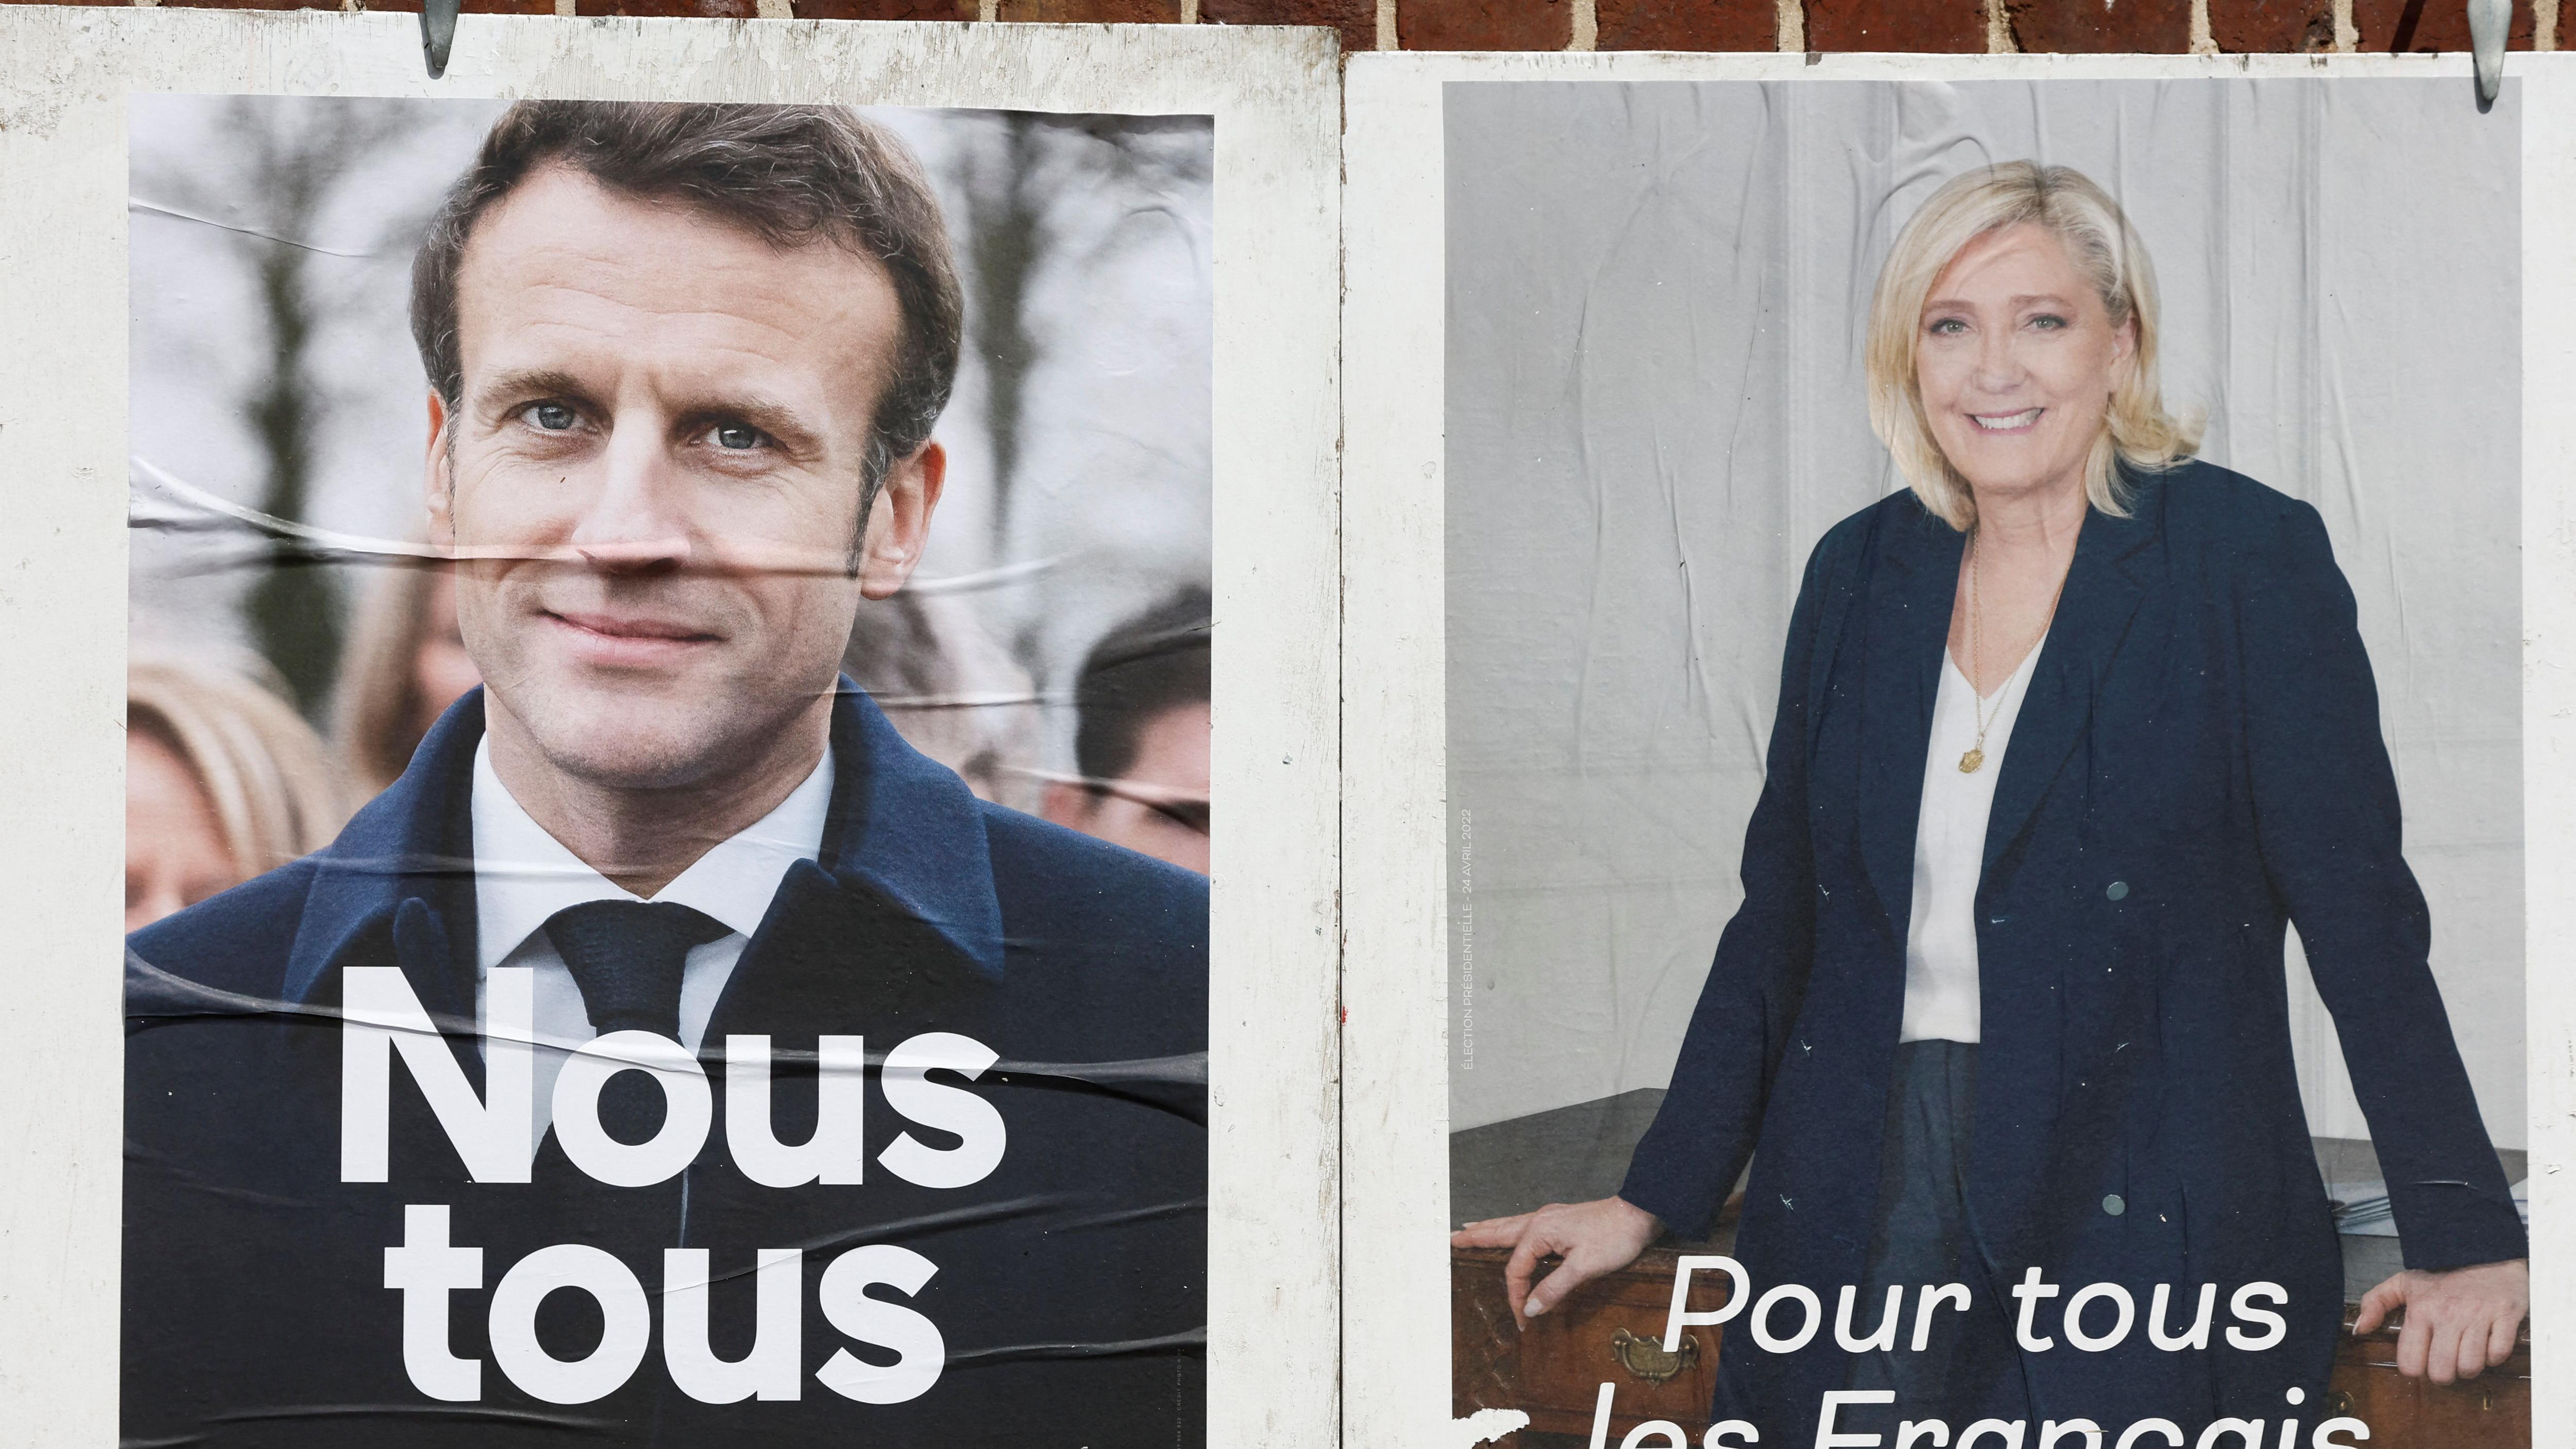 Cartazes oficiais da campanha dos dois candidatos às eleições presidenciais francesas em 2022e le Pen, leader of French far-right National Rally (Rassemblement National) party, and French President Emmanuel Macron, 